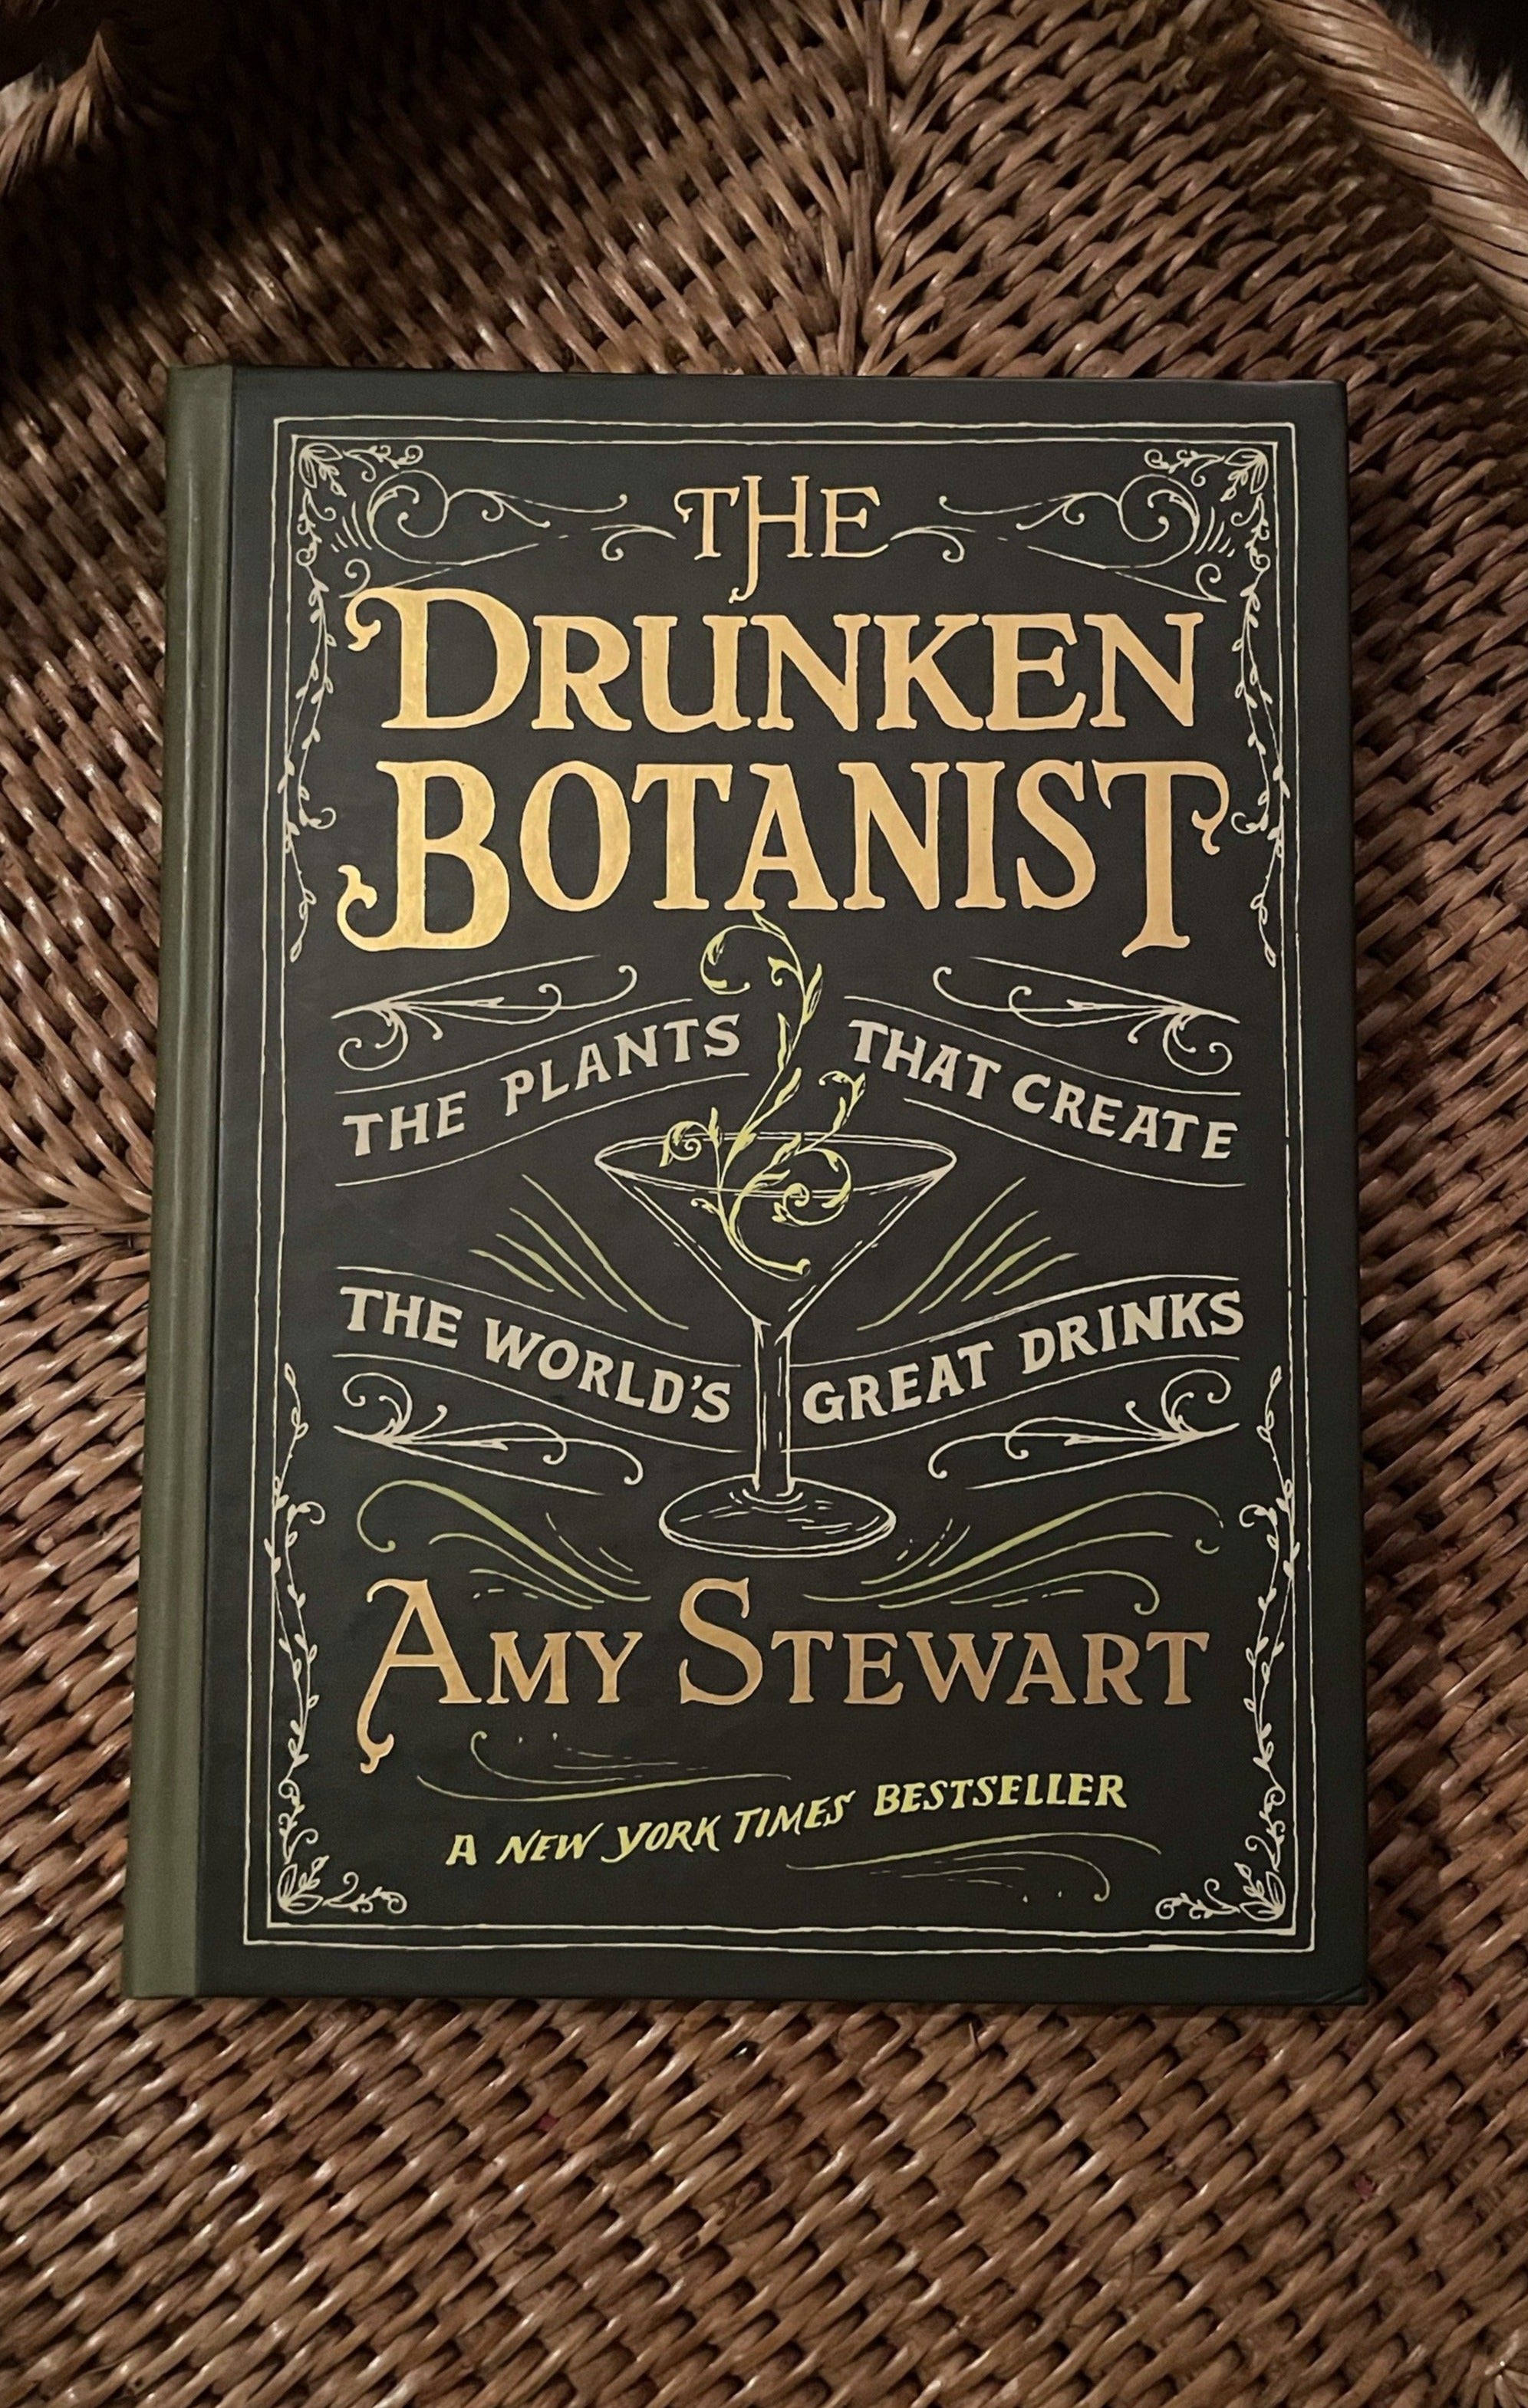 The Drunken Botanist by Amy Stewart